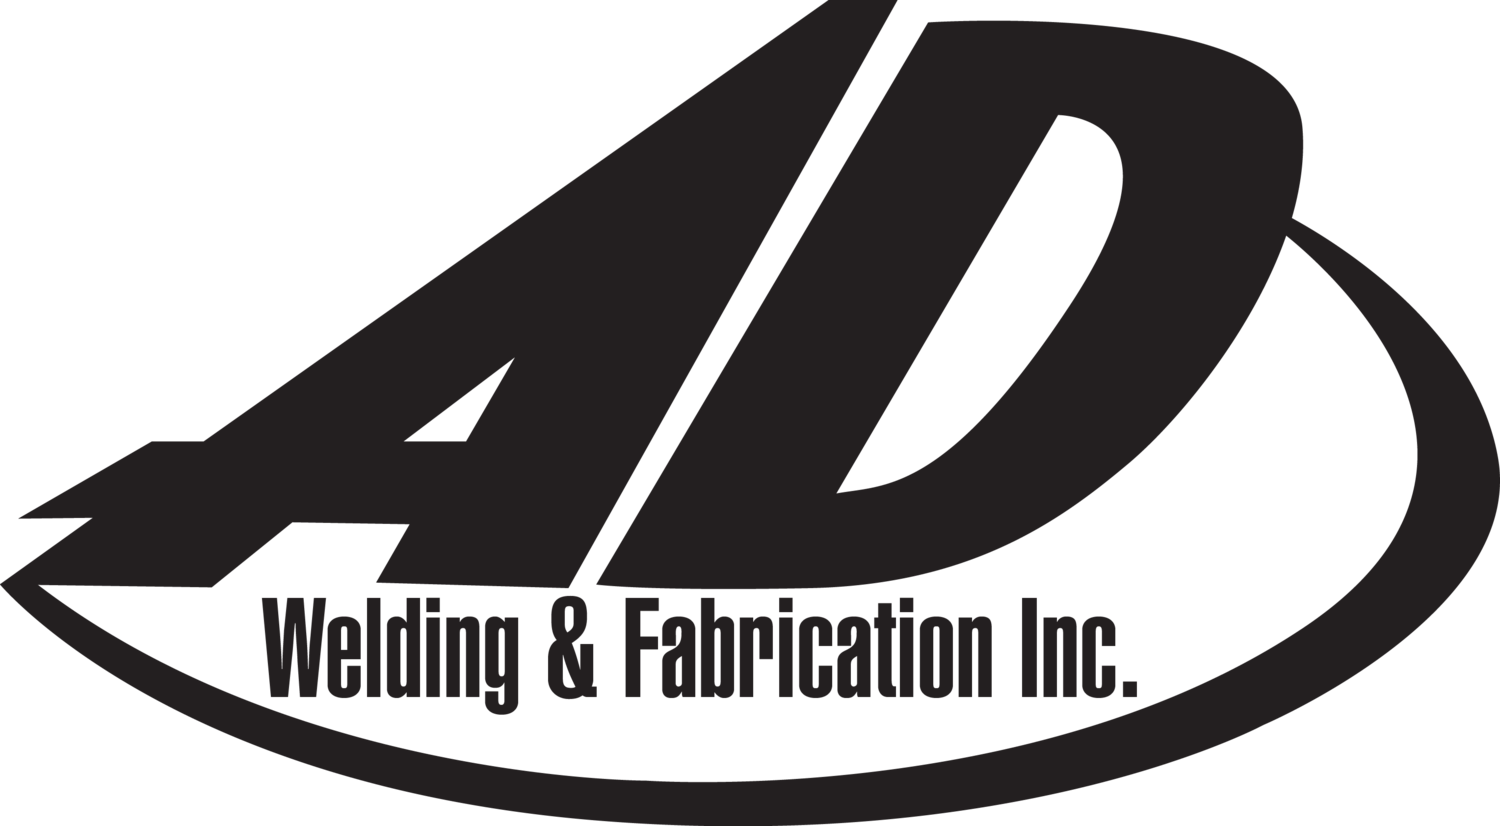 A.D. Welding & Fabrication Inc.